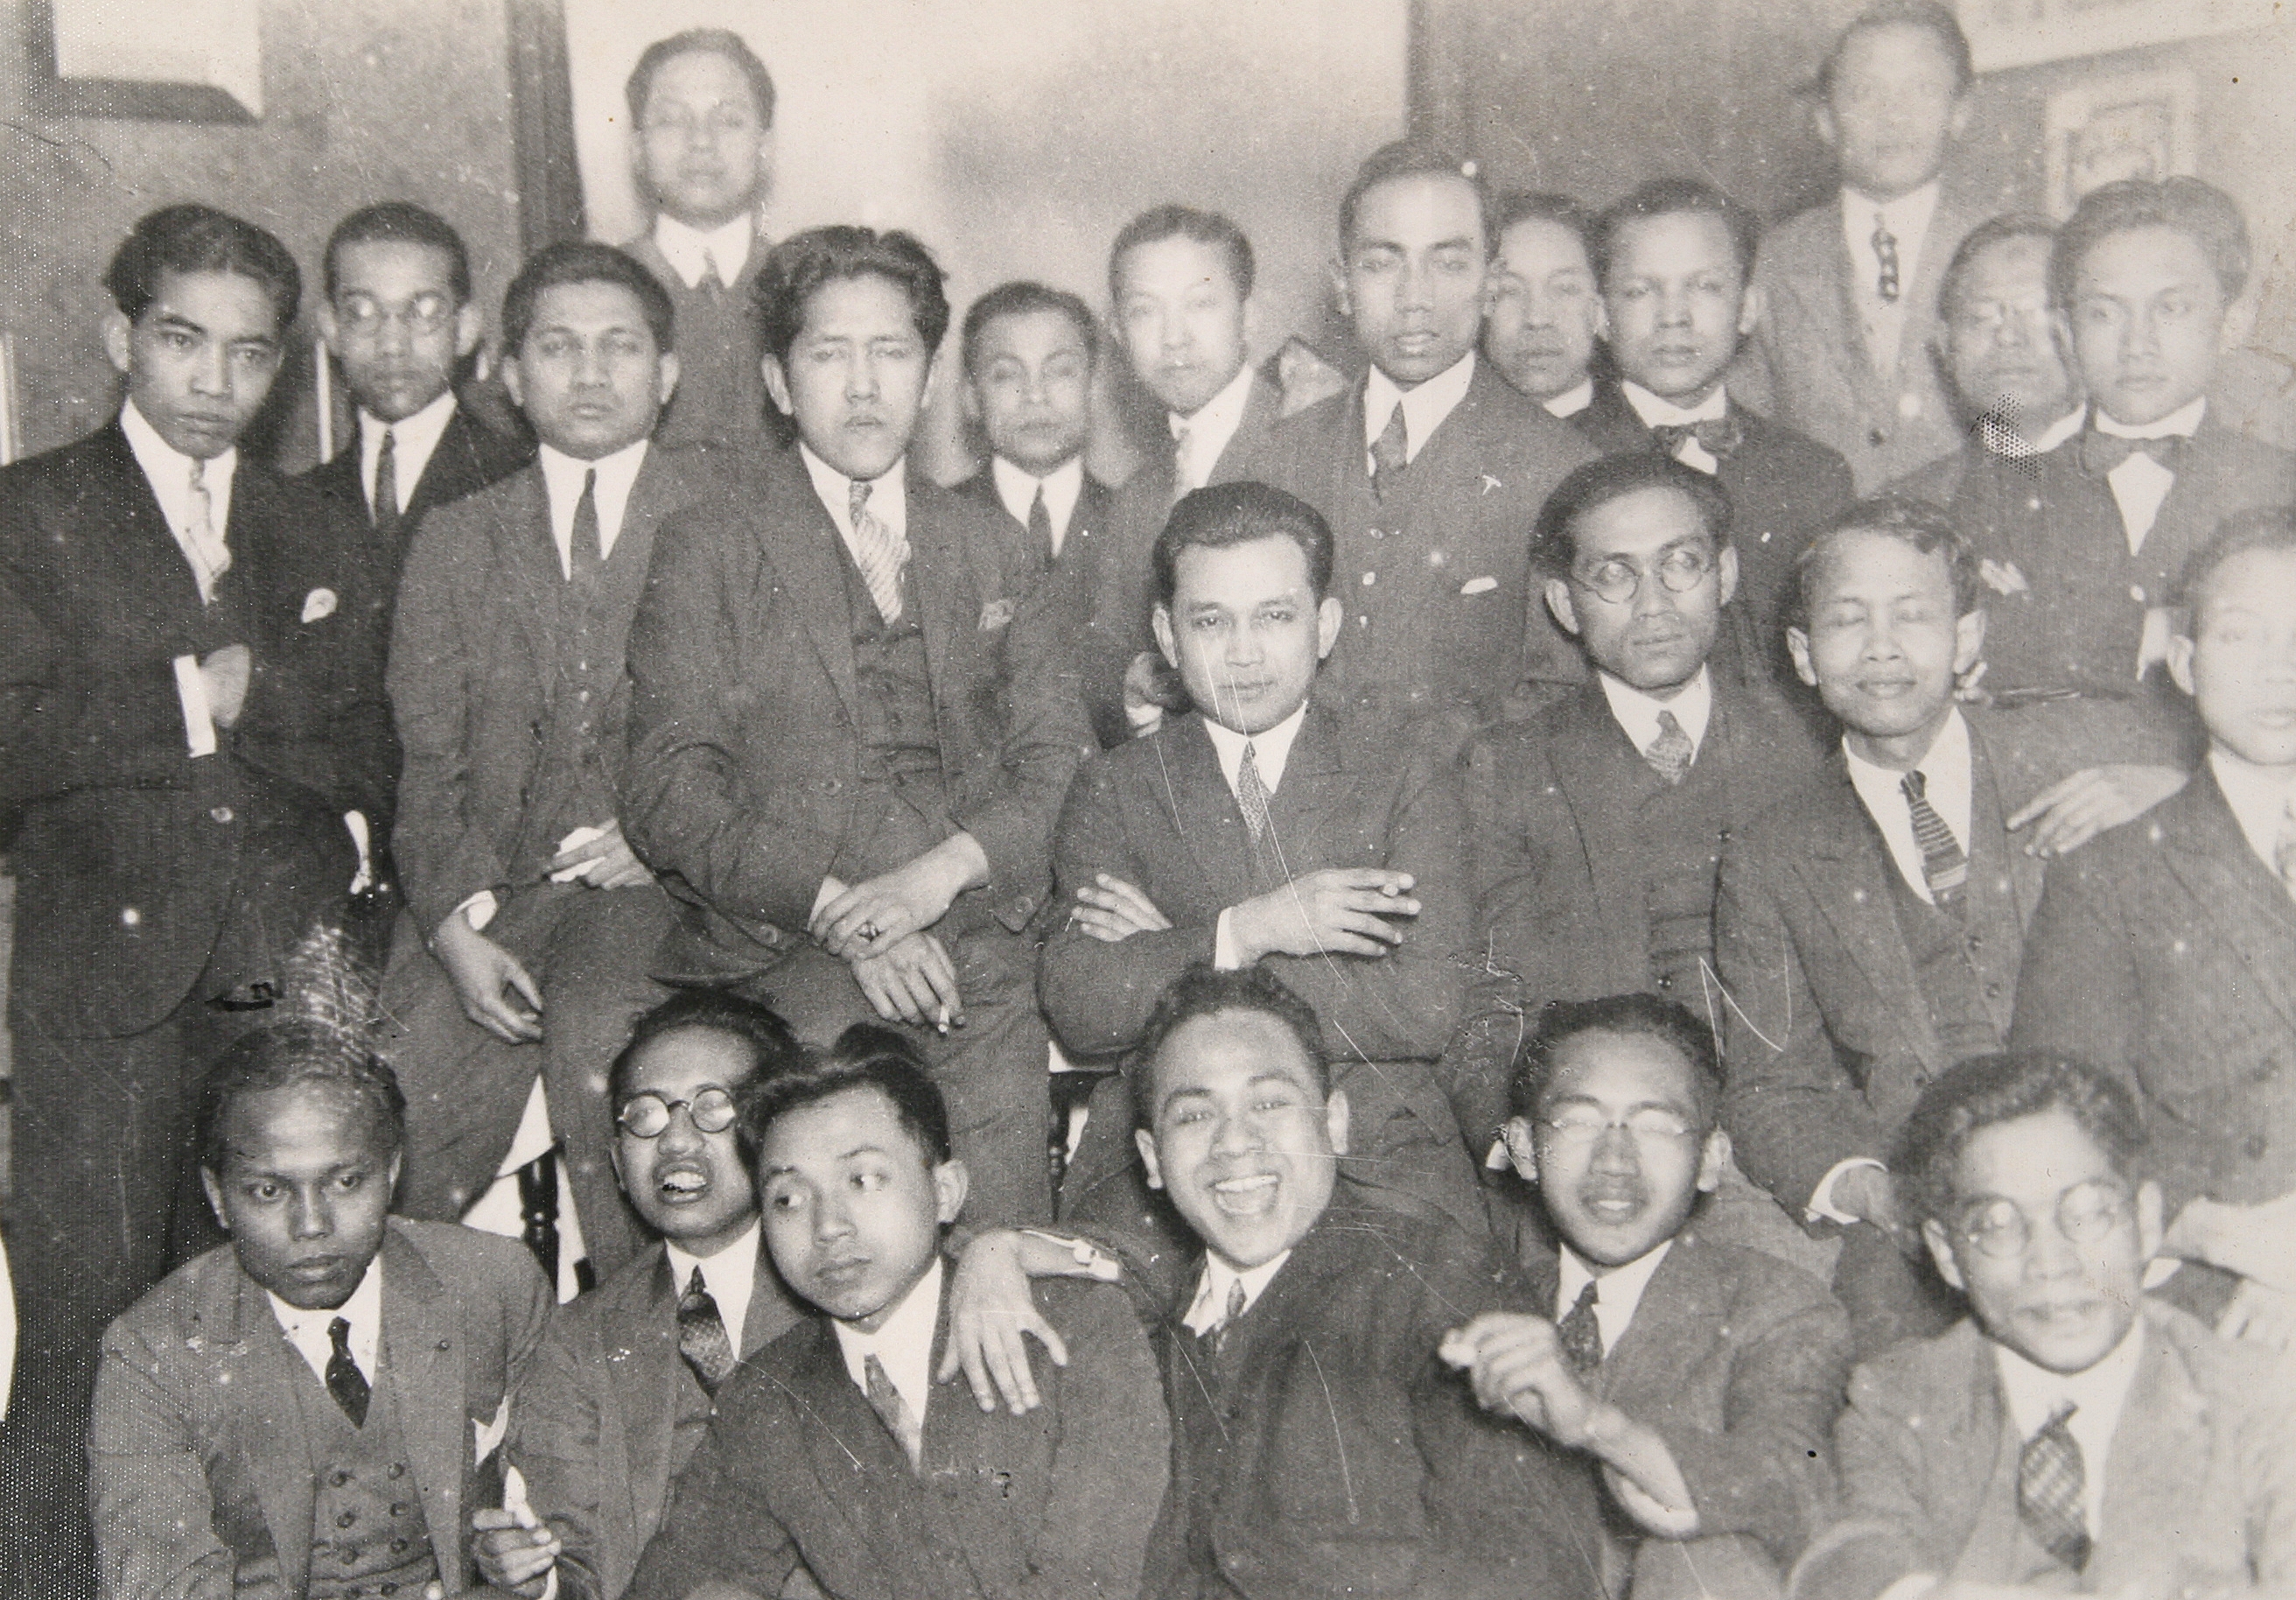 Bijeenkomst van de Perhimpunan Indonesia, waarschijnlijk in Leiden tussen ca. 1924 en 1927. Mohammed Hatta staat op de bovenste rij als zesde van links | KITLV